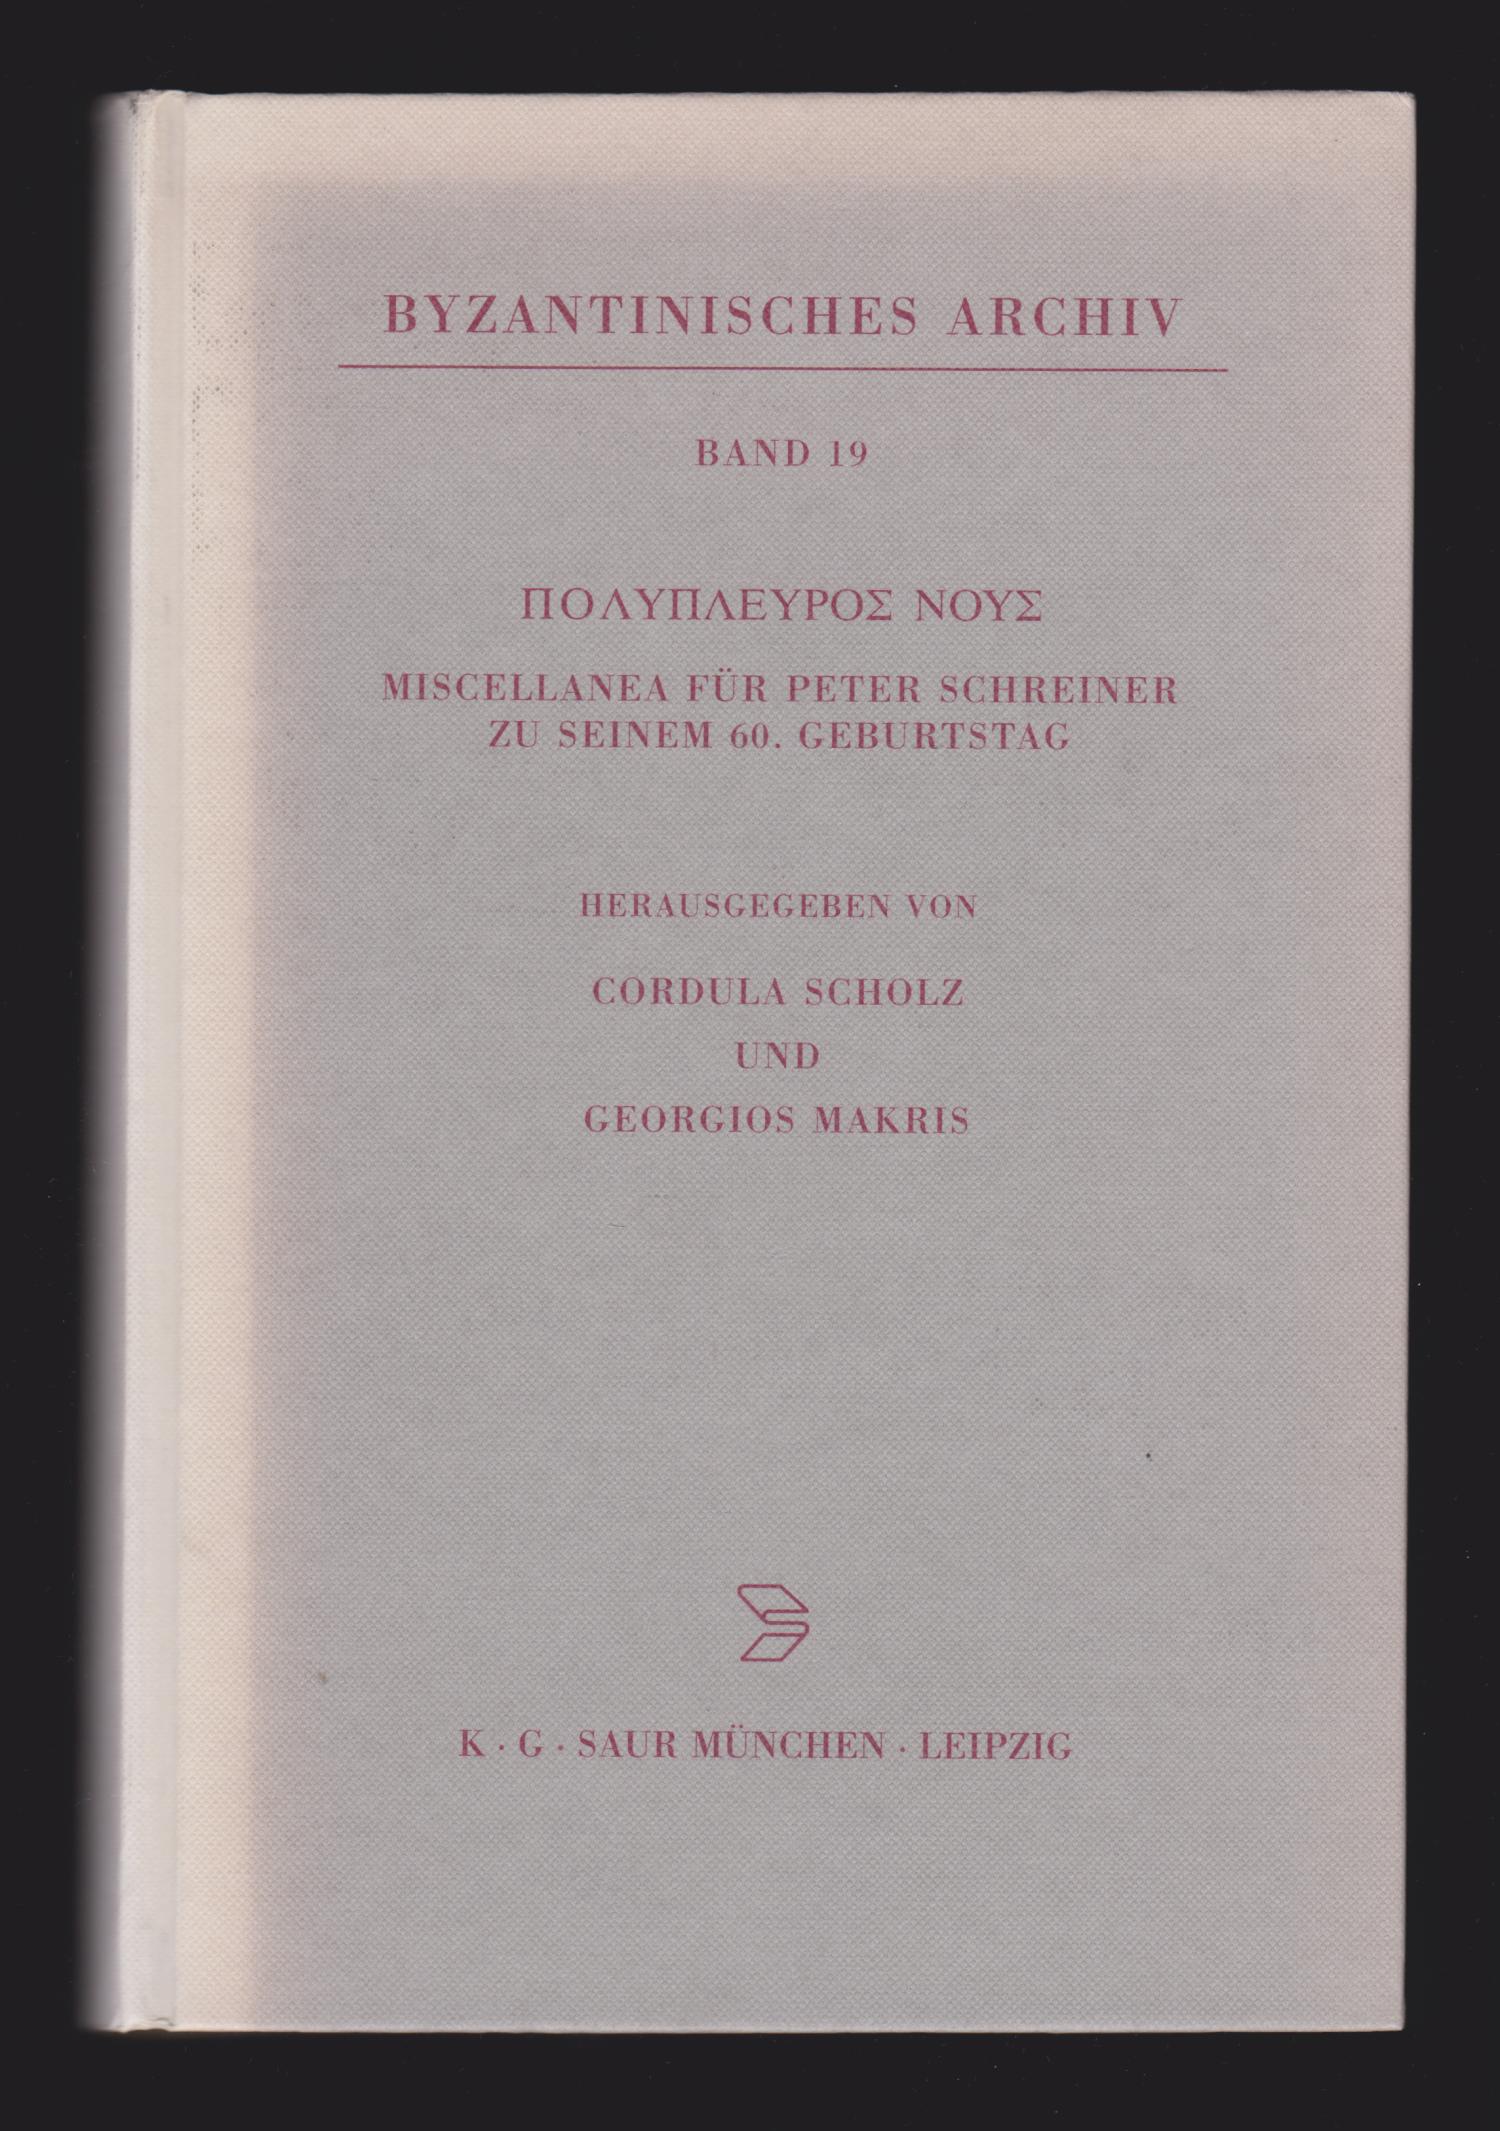 Polypleuros nous: Miscellanea für Peter Schreiner zu seinem 60. Geburtstag (Byzantinisches Archiv) - Cordula Scholz; Georgios Makris